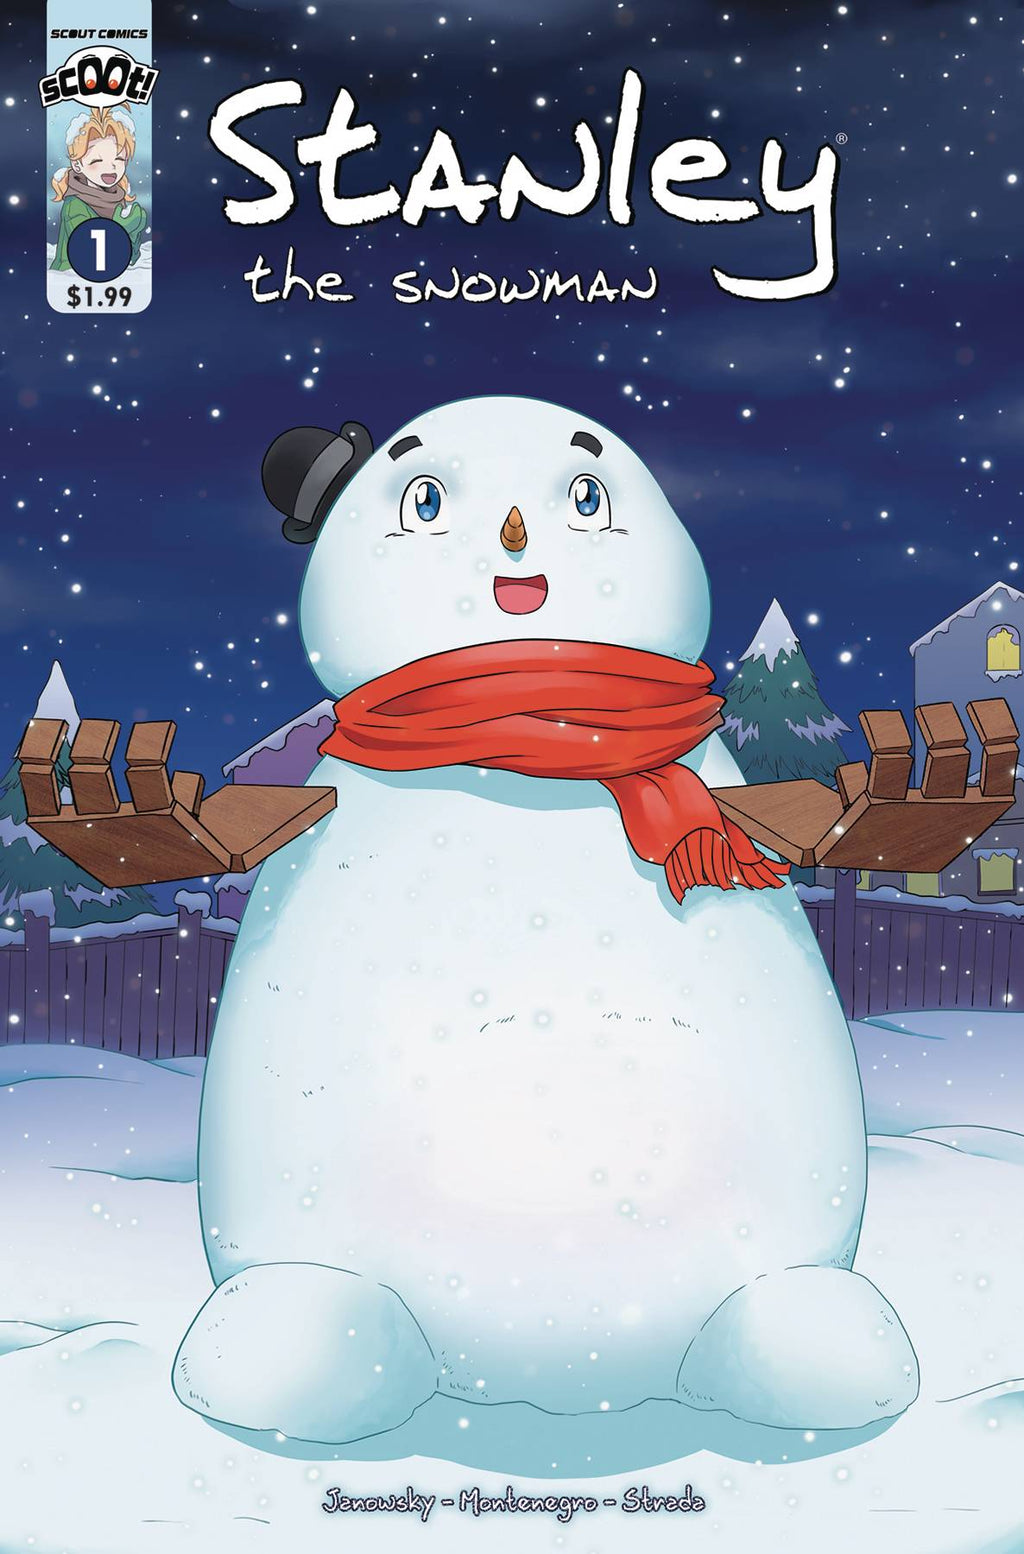 Stanley The Snowman #1 | Scout Comics & Entertainment Holdings, Inc.